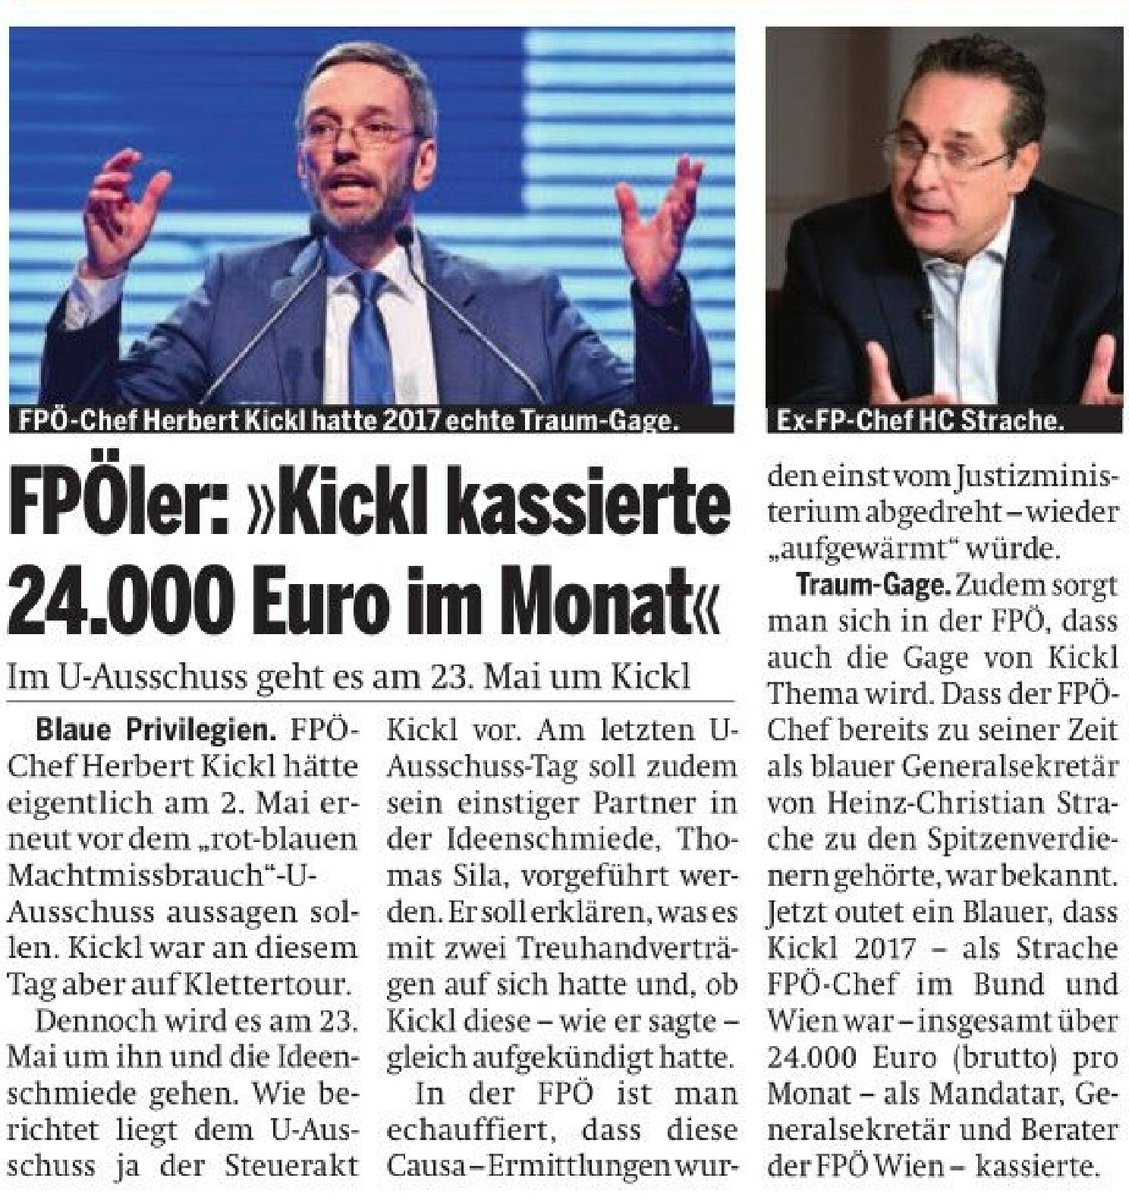 Der #Volkskanzler redet irgendwas von einem System, aber er profitiert vom System! 

24.000 Euro im Monat bekommt der einfache Bürger #Kickl! Bekommt viel Geld vom Volk. #FPÖ #OeNR